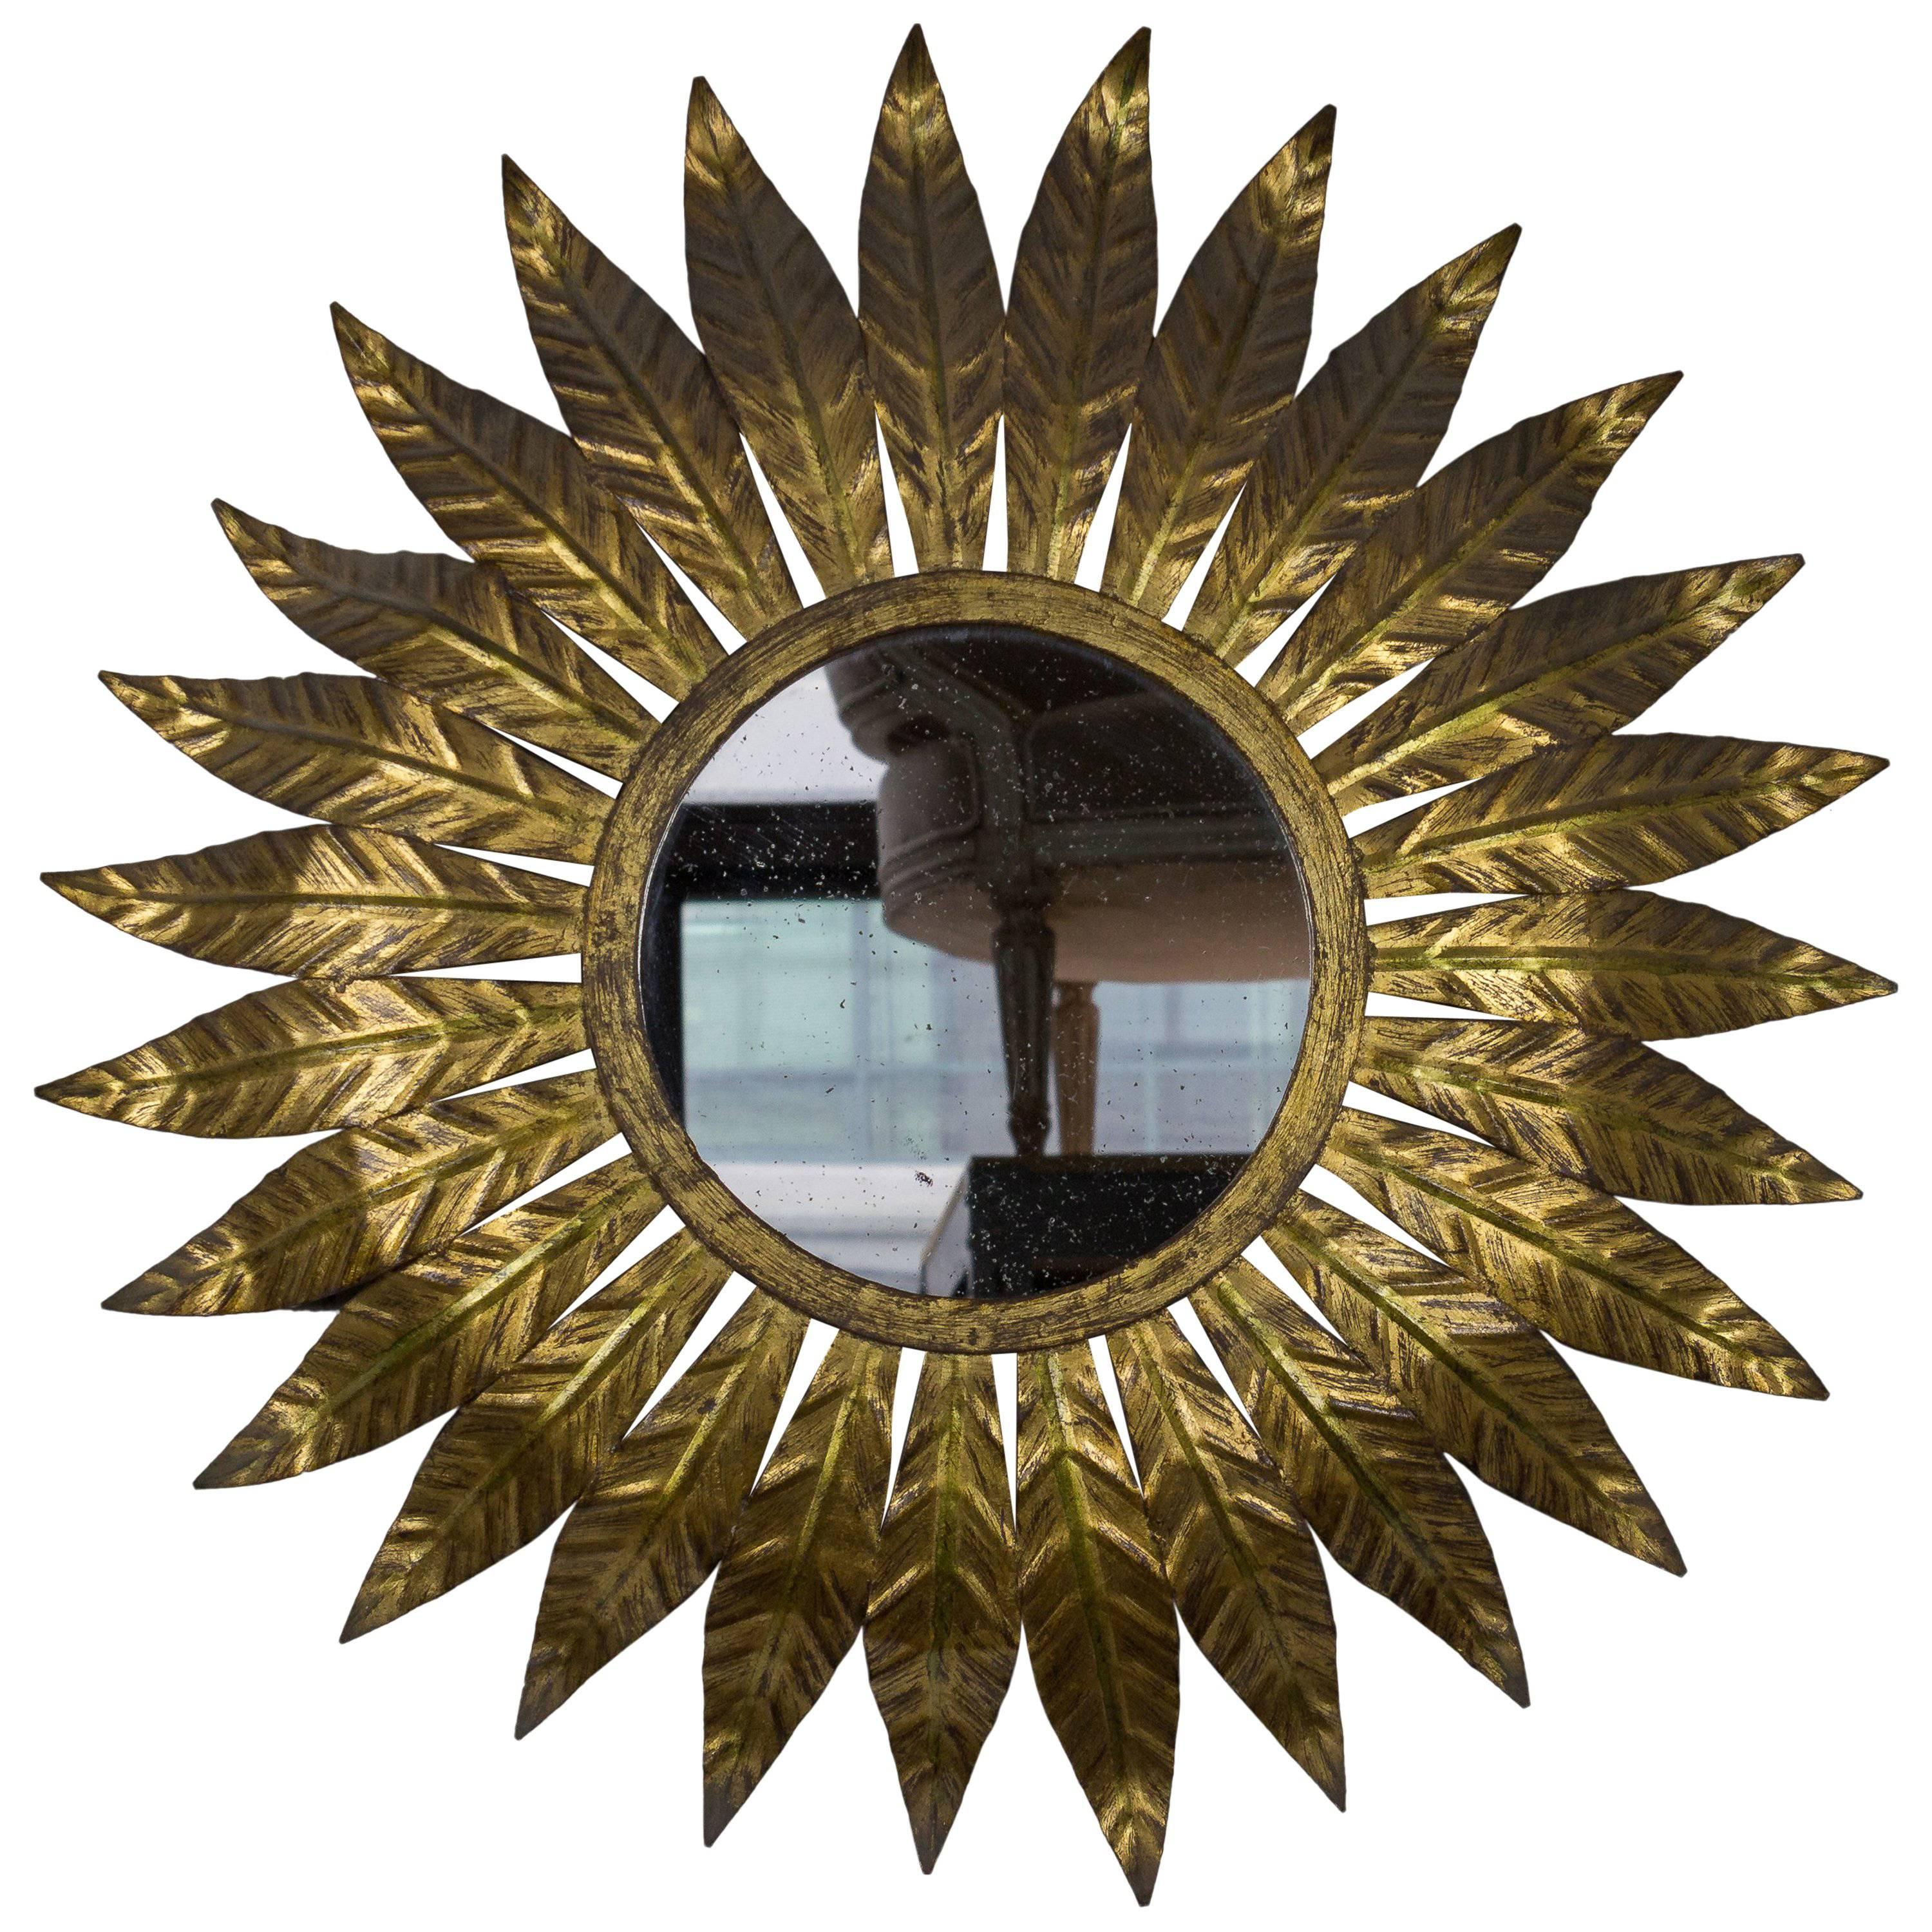 Runder spanischer vergoldeter Metall-Sunburst-Spiegel mit großen strahlenden Blättern